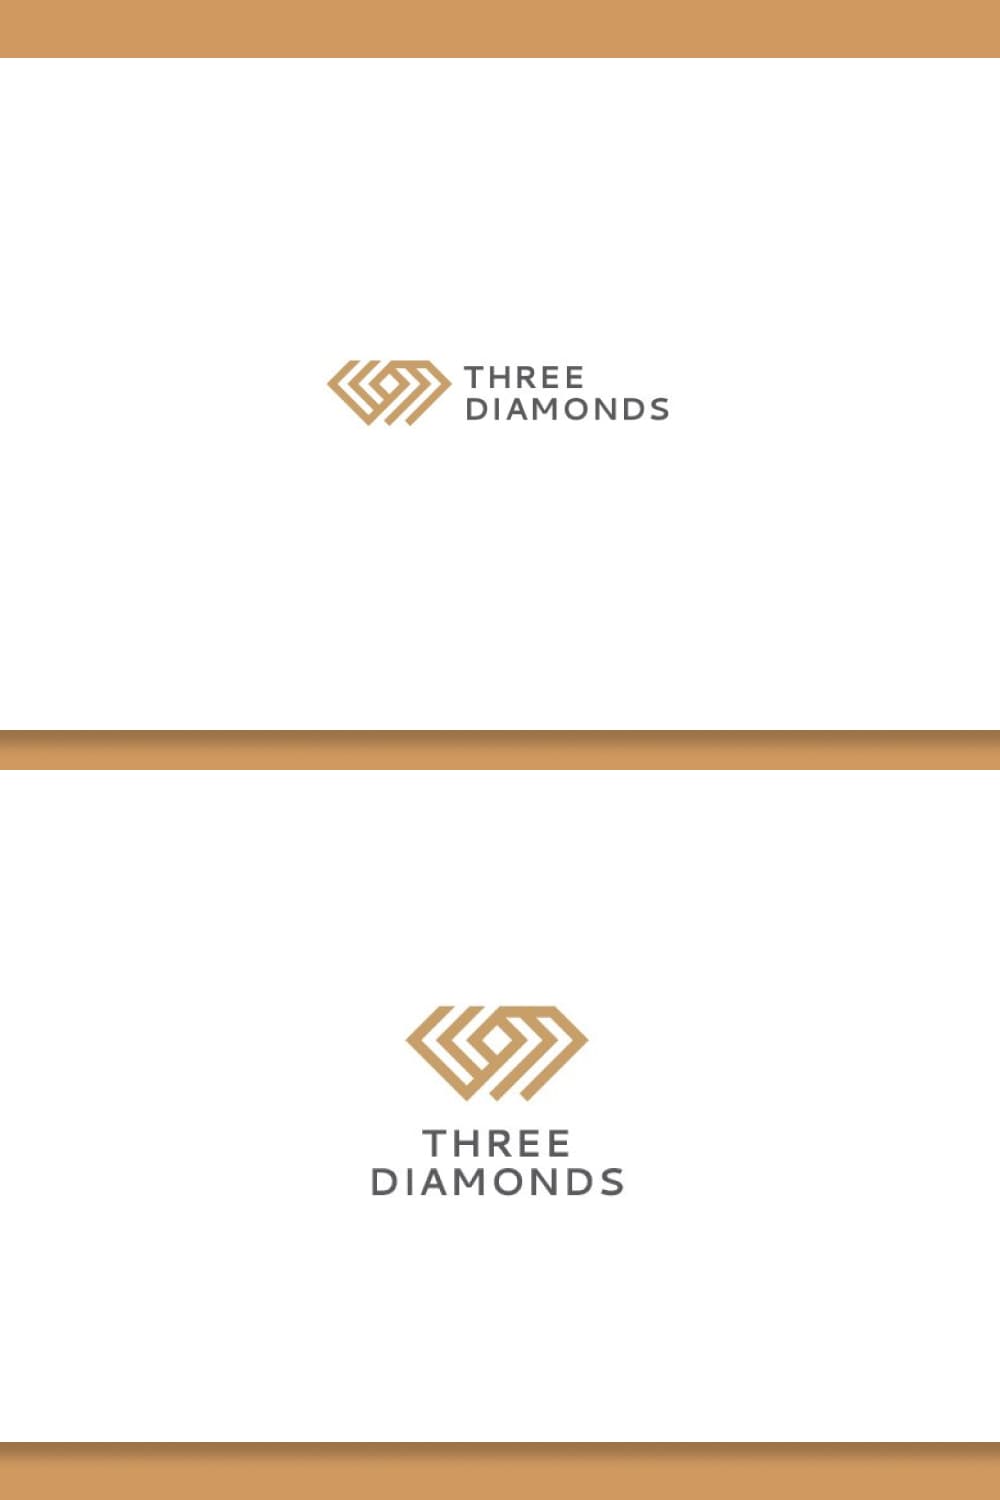 three diamond jewelry logo for any kind of jewelry.